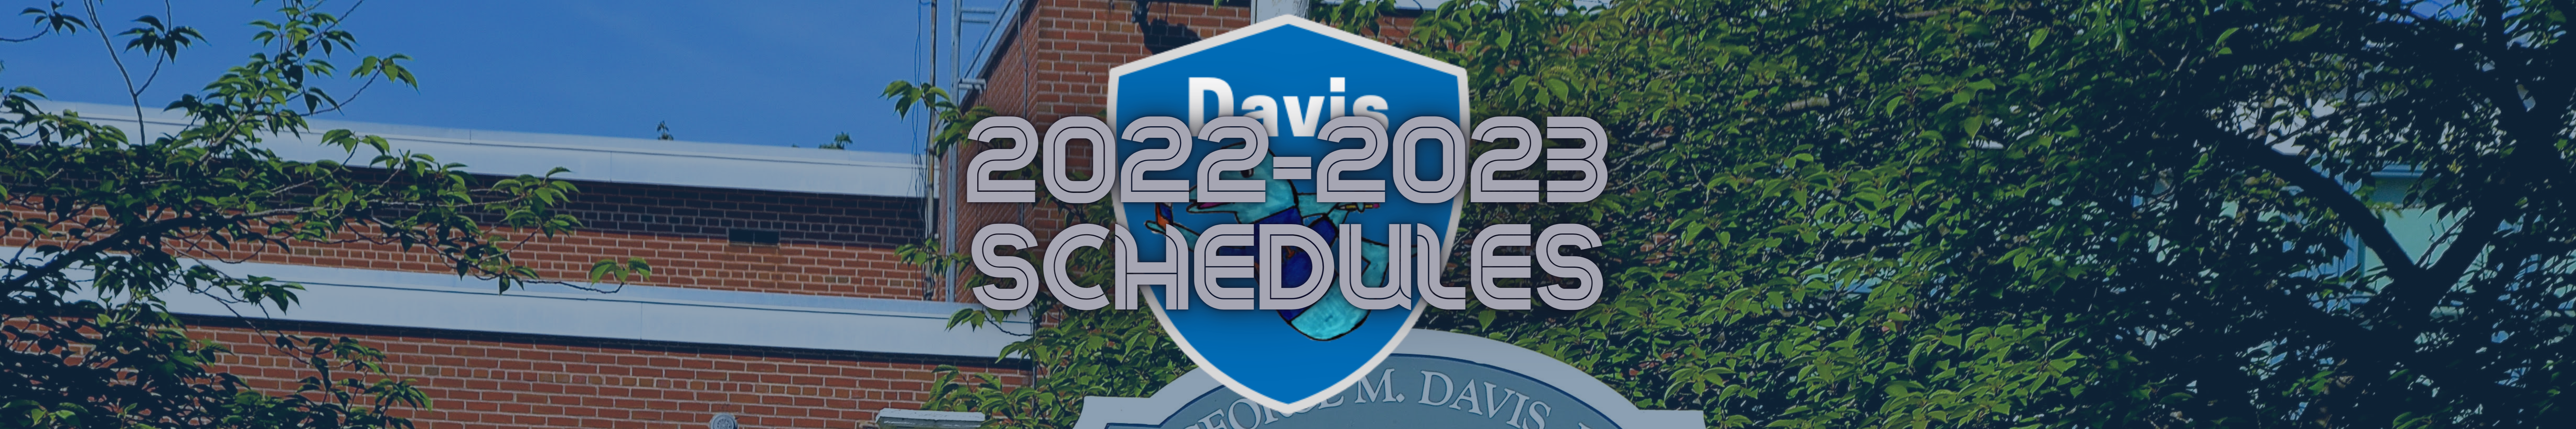 2022-2023 Schedules banner